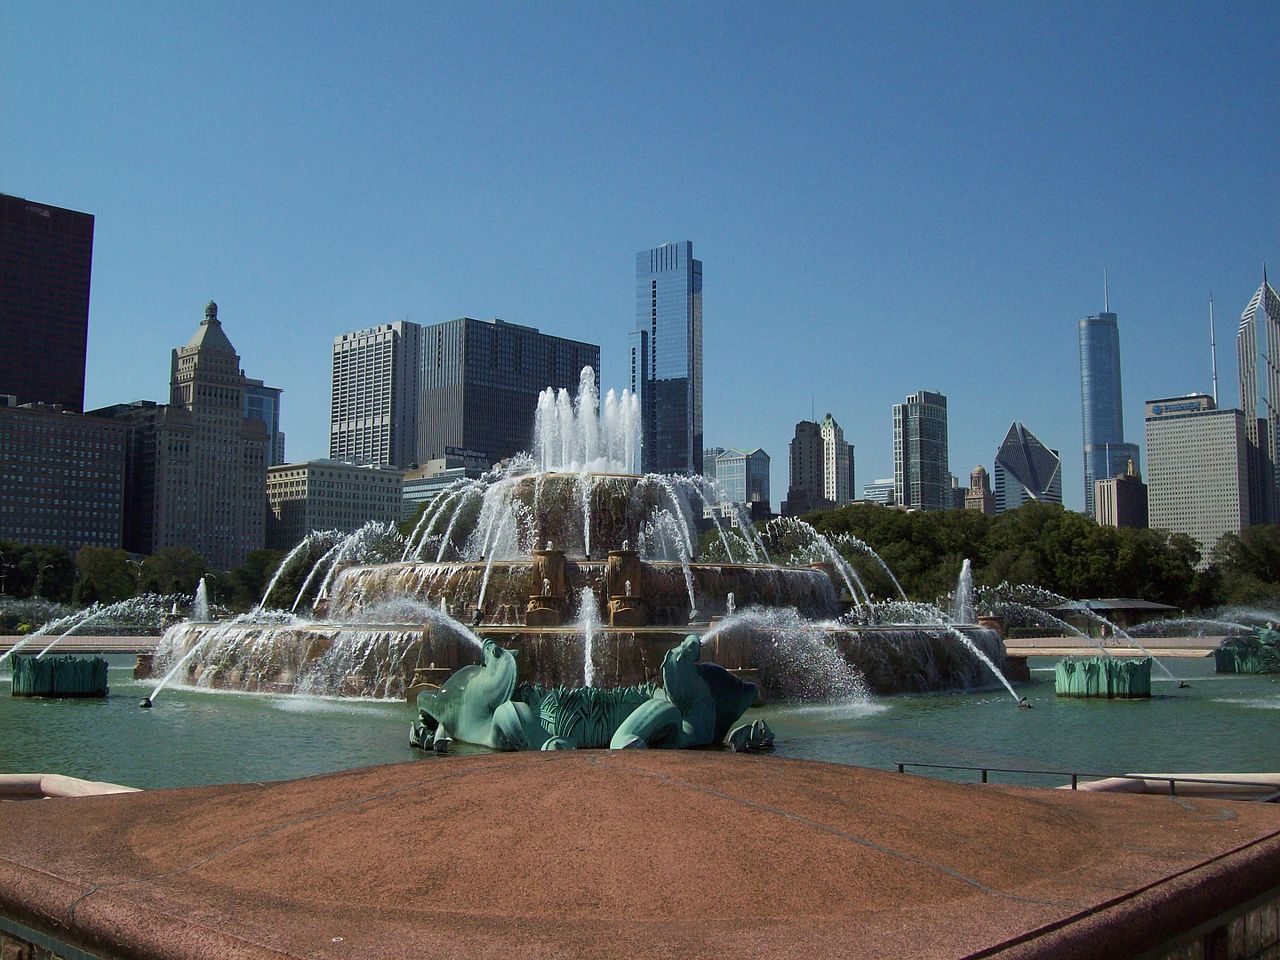 نافورة باكنجهام من أجمل وجهات سياحية في شيكاغو بواسطة An Errant Knight